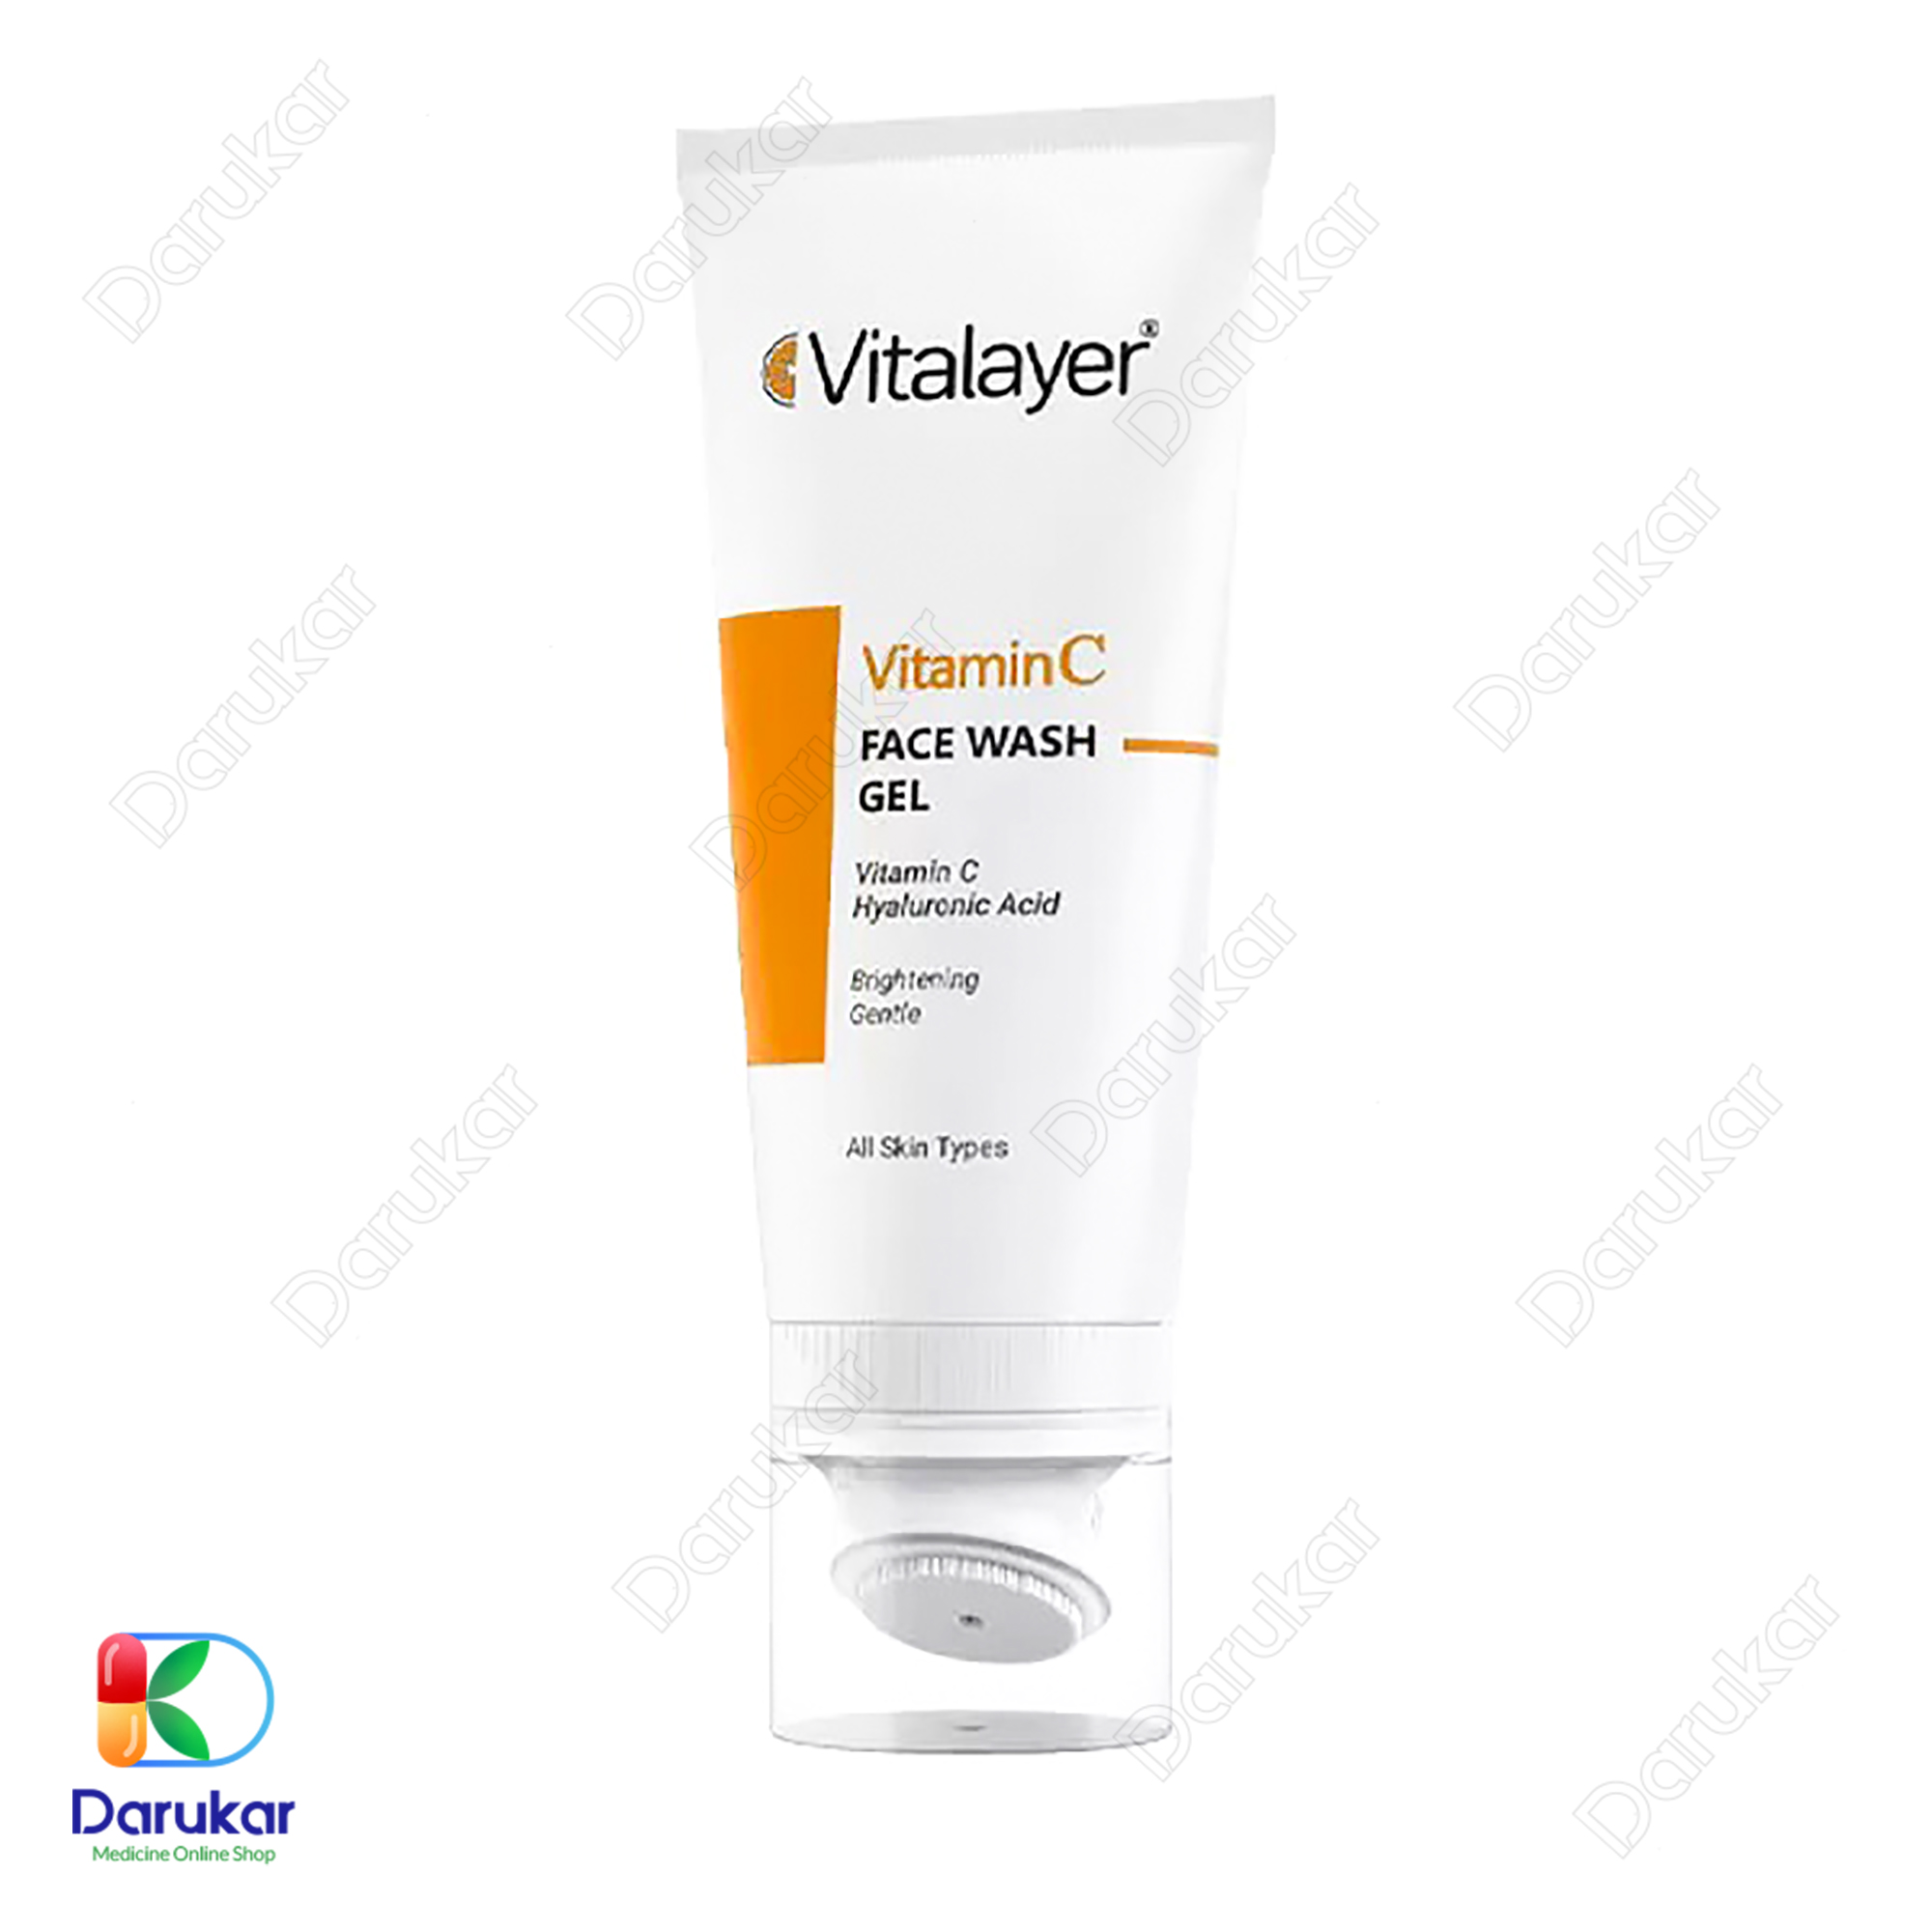 Vitalayar Vitamin C Face Wash Gel 150ml